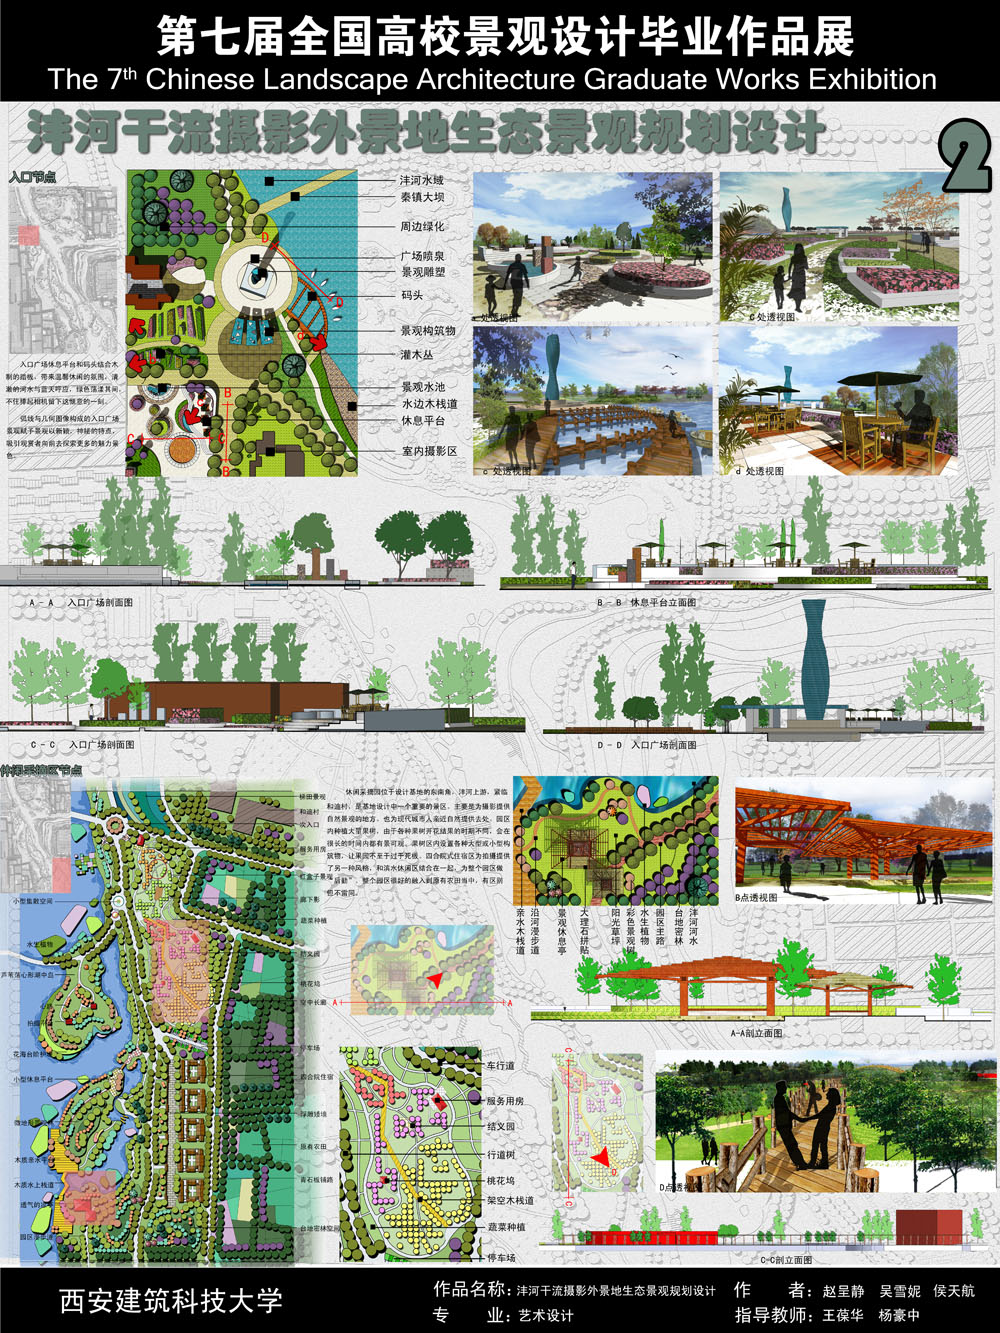 沣河干流摄影外景地生态景观规划设计-2